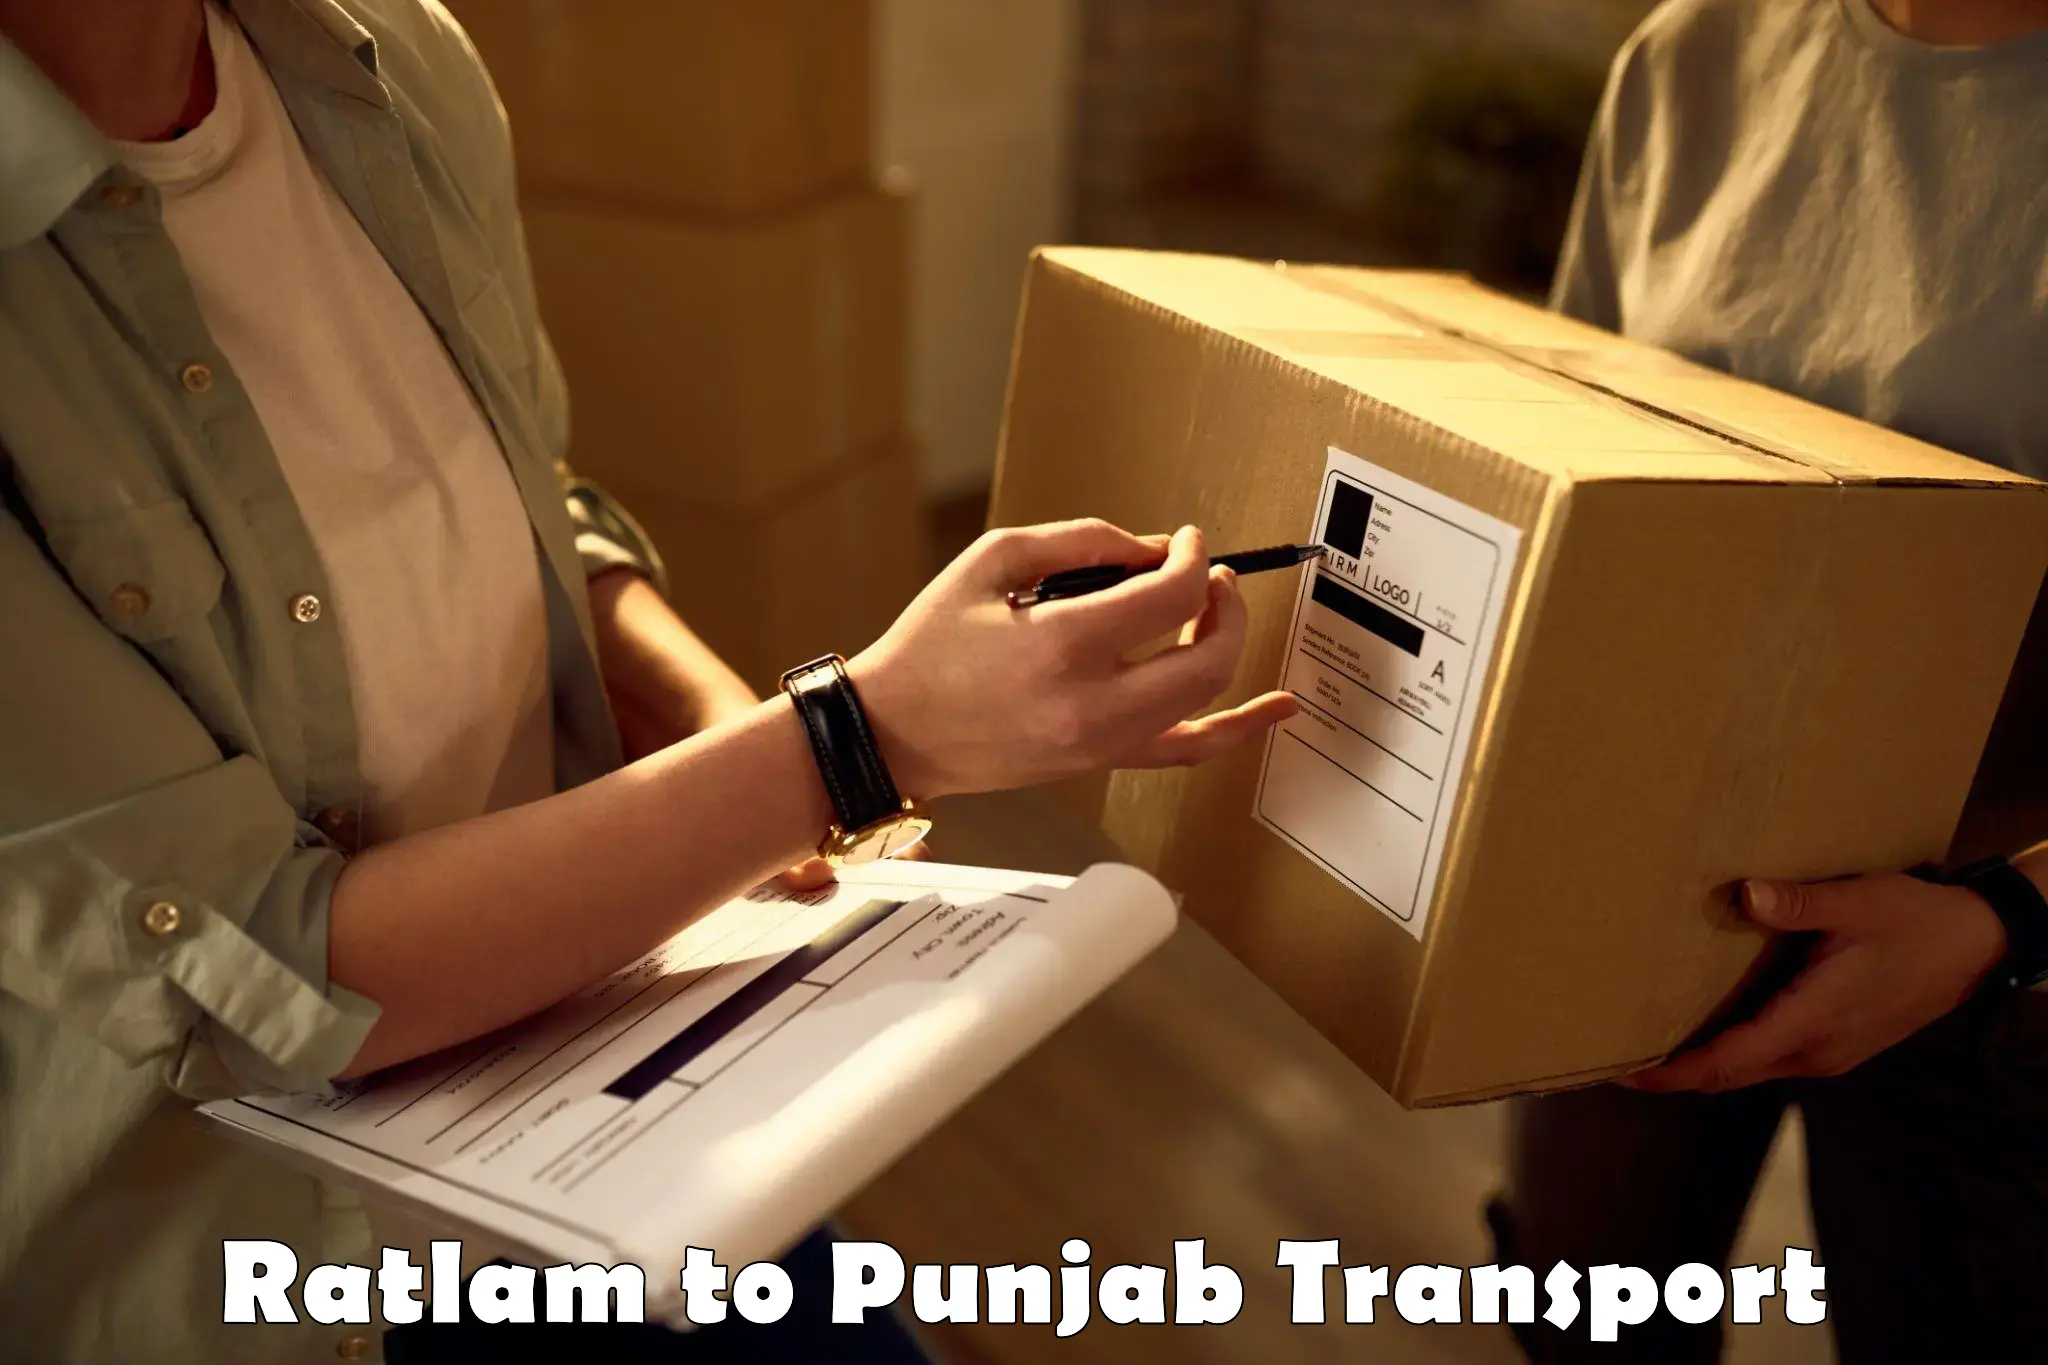 Furniture transport service Ratlam to Punjab